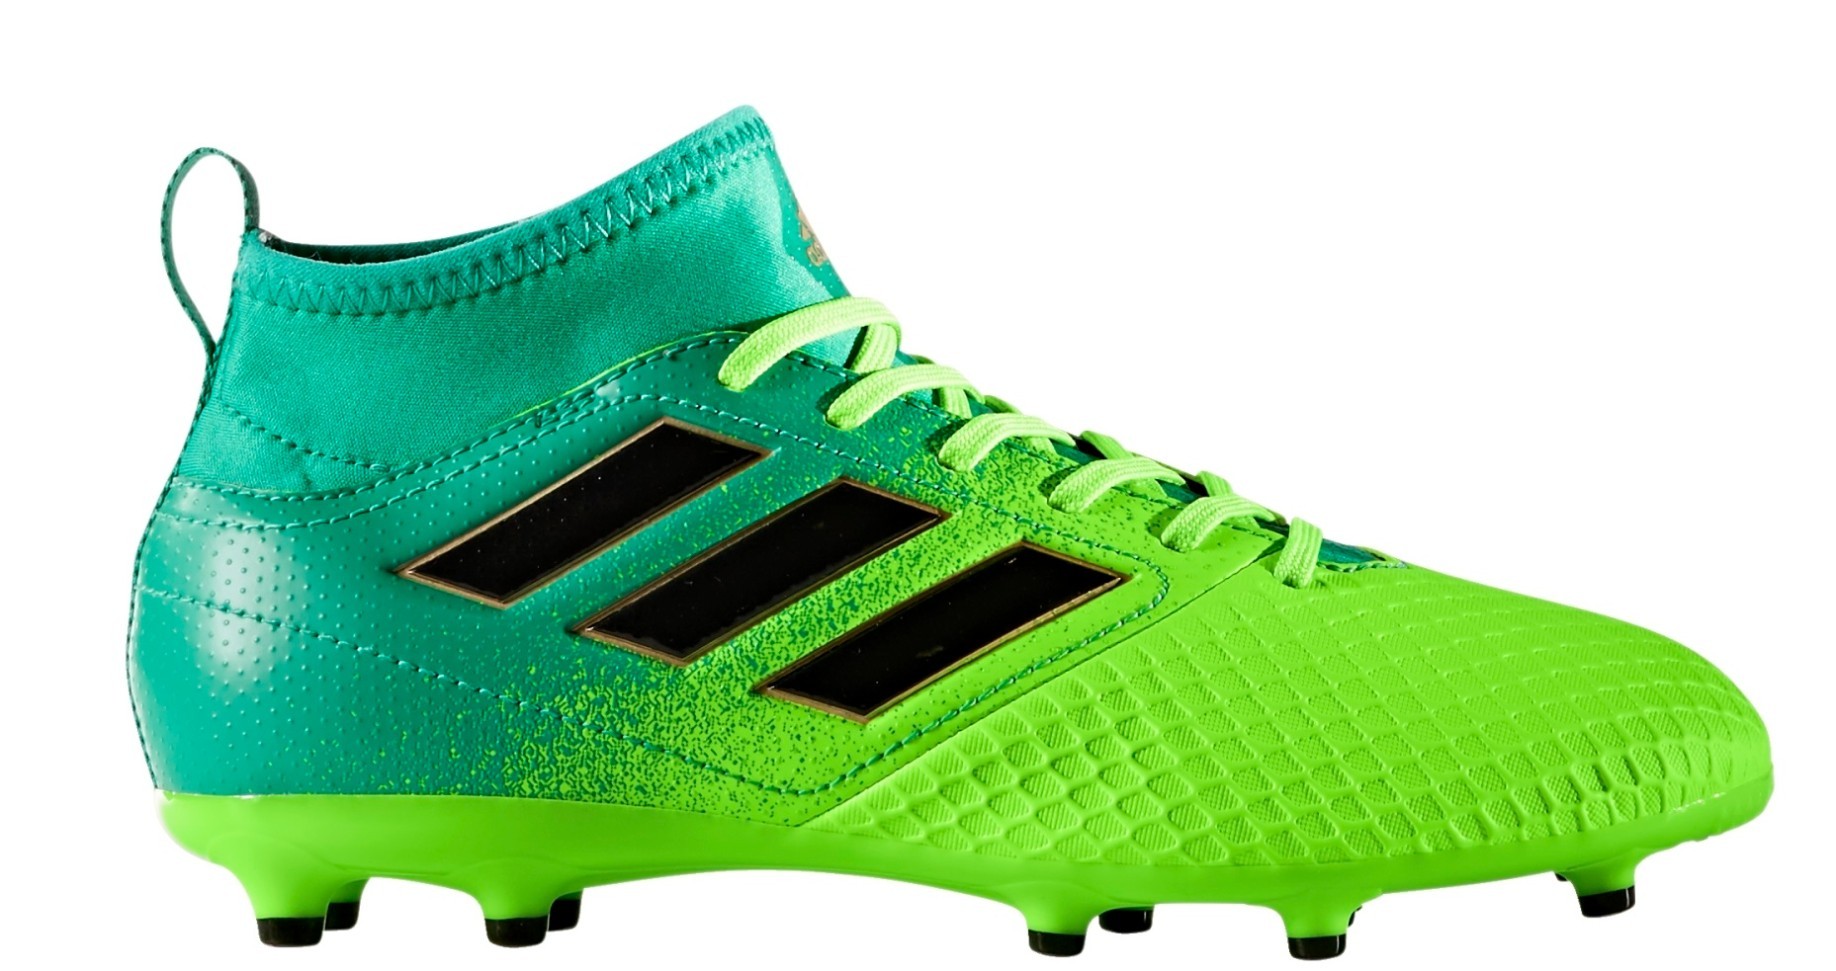 Botas fútbol Adidas Ace 17.3 FG Dispara Pack colore verde - Adidas - SportIT.com